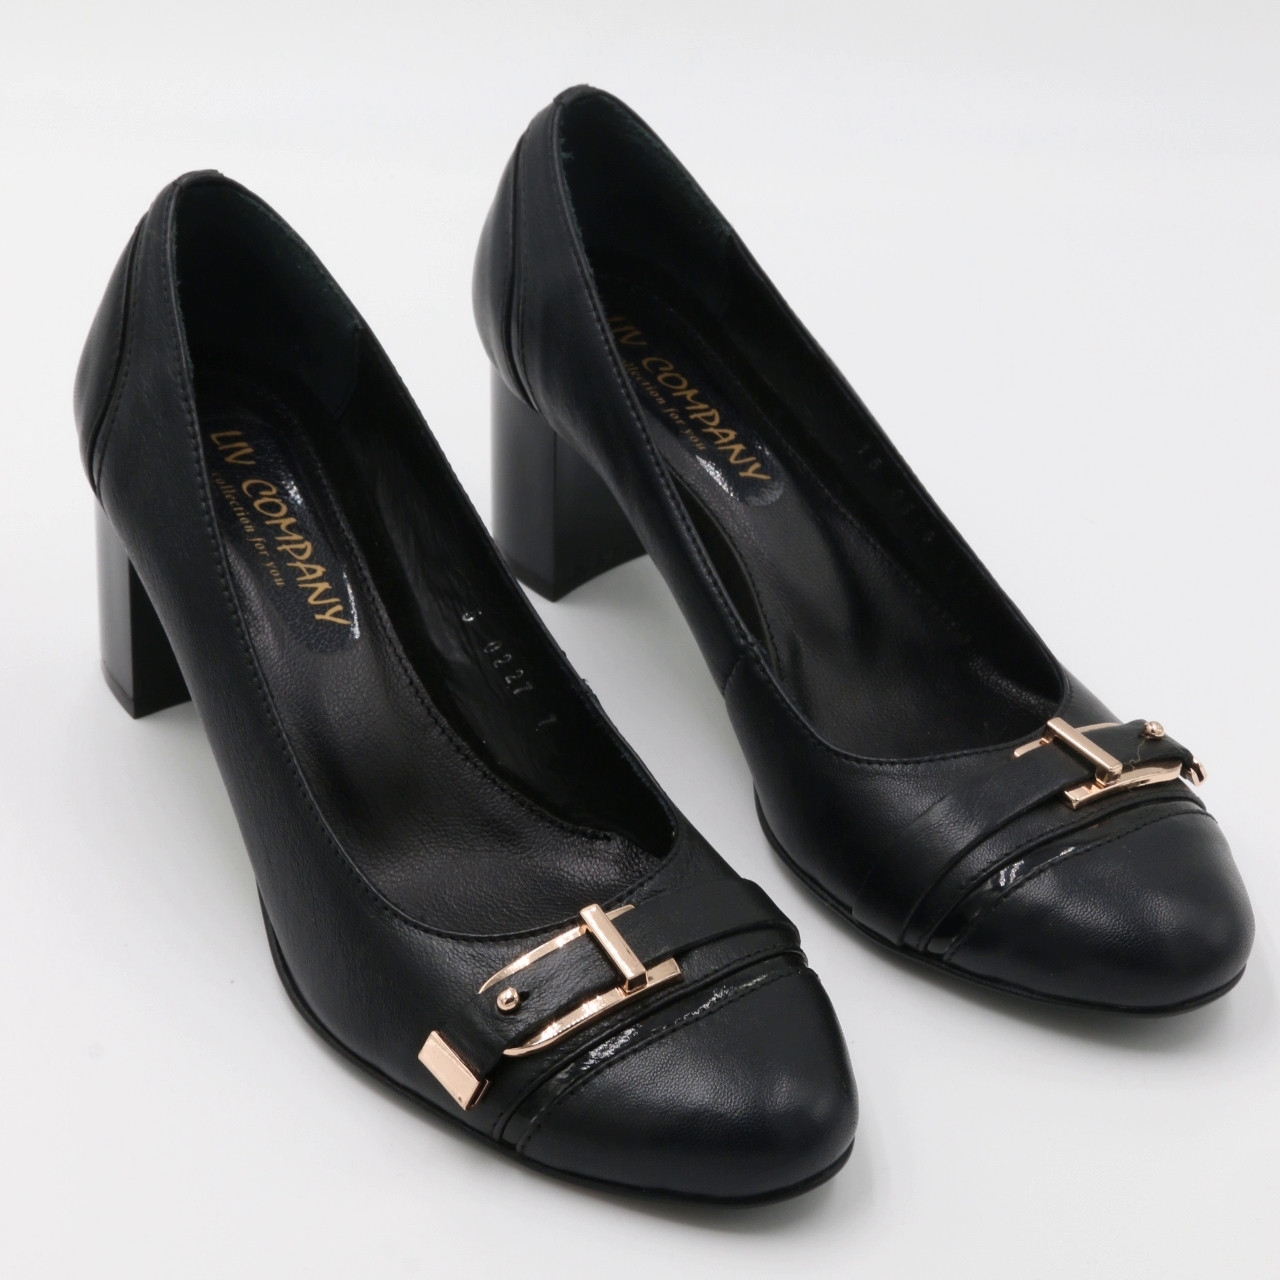 Туфлі жіночі класичні шкіряні чорні на підборах 6.5 сантиметра Liv код — (5022-77)